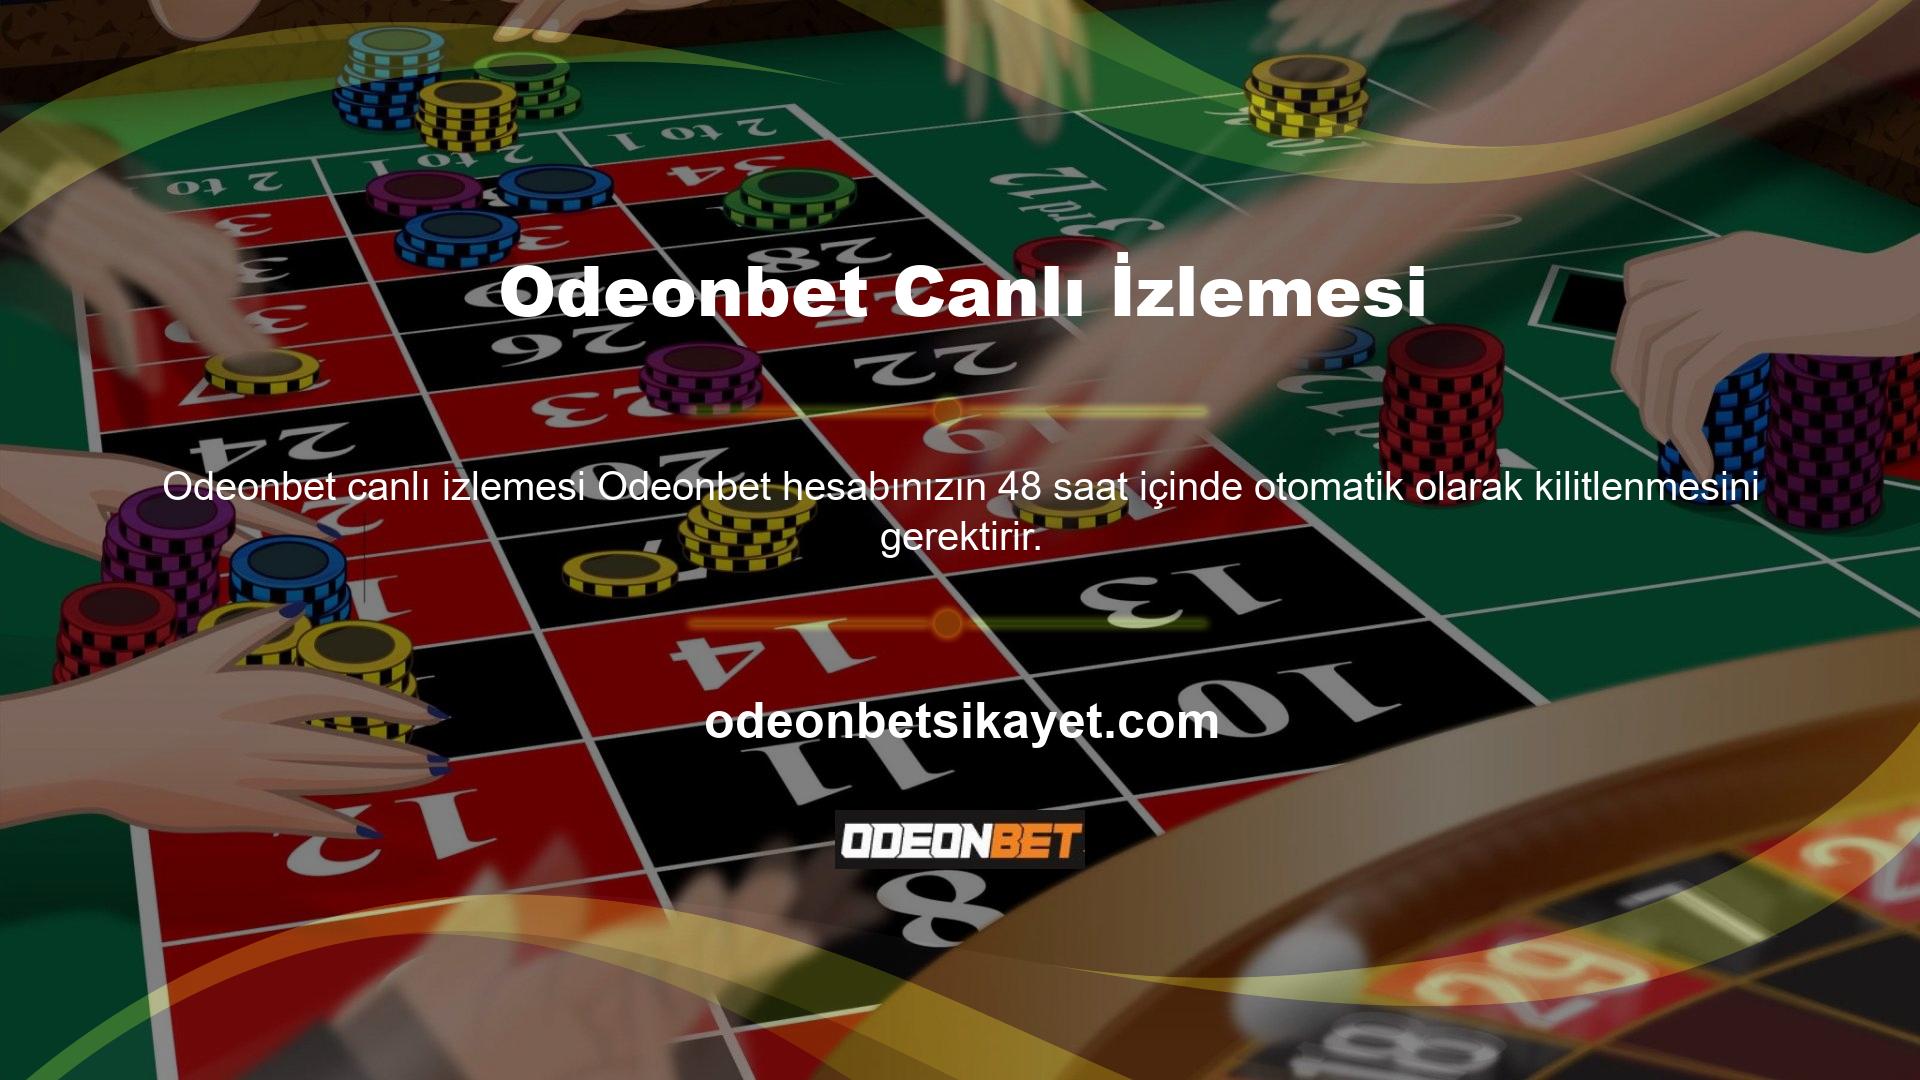 Yeni giriş adresinizle artık Odeonbet web sitesinde, özellikle canlı casino ve casino oyunları alanında çok çeşitli seçeneklere göz atabilirsiniz